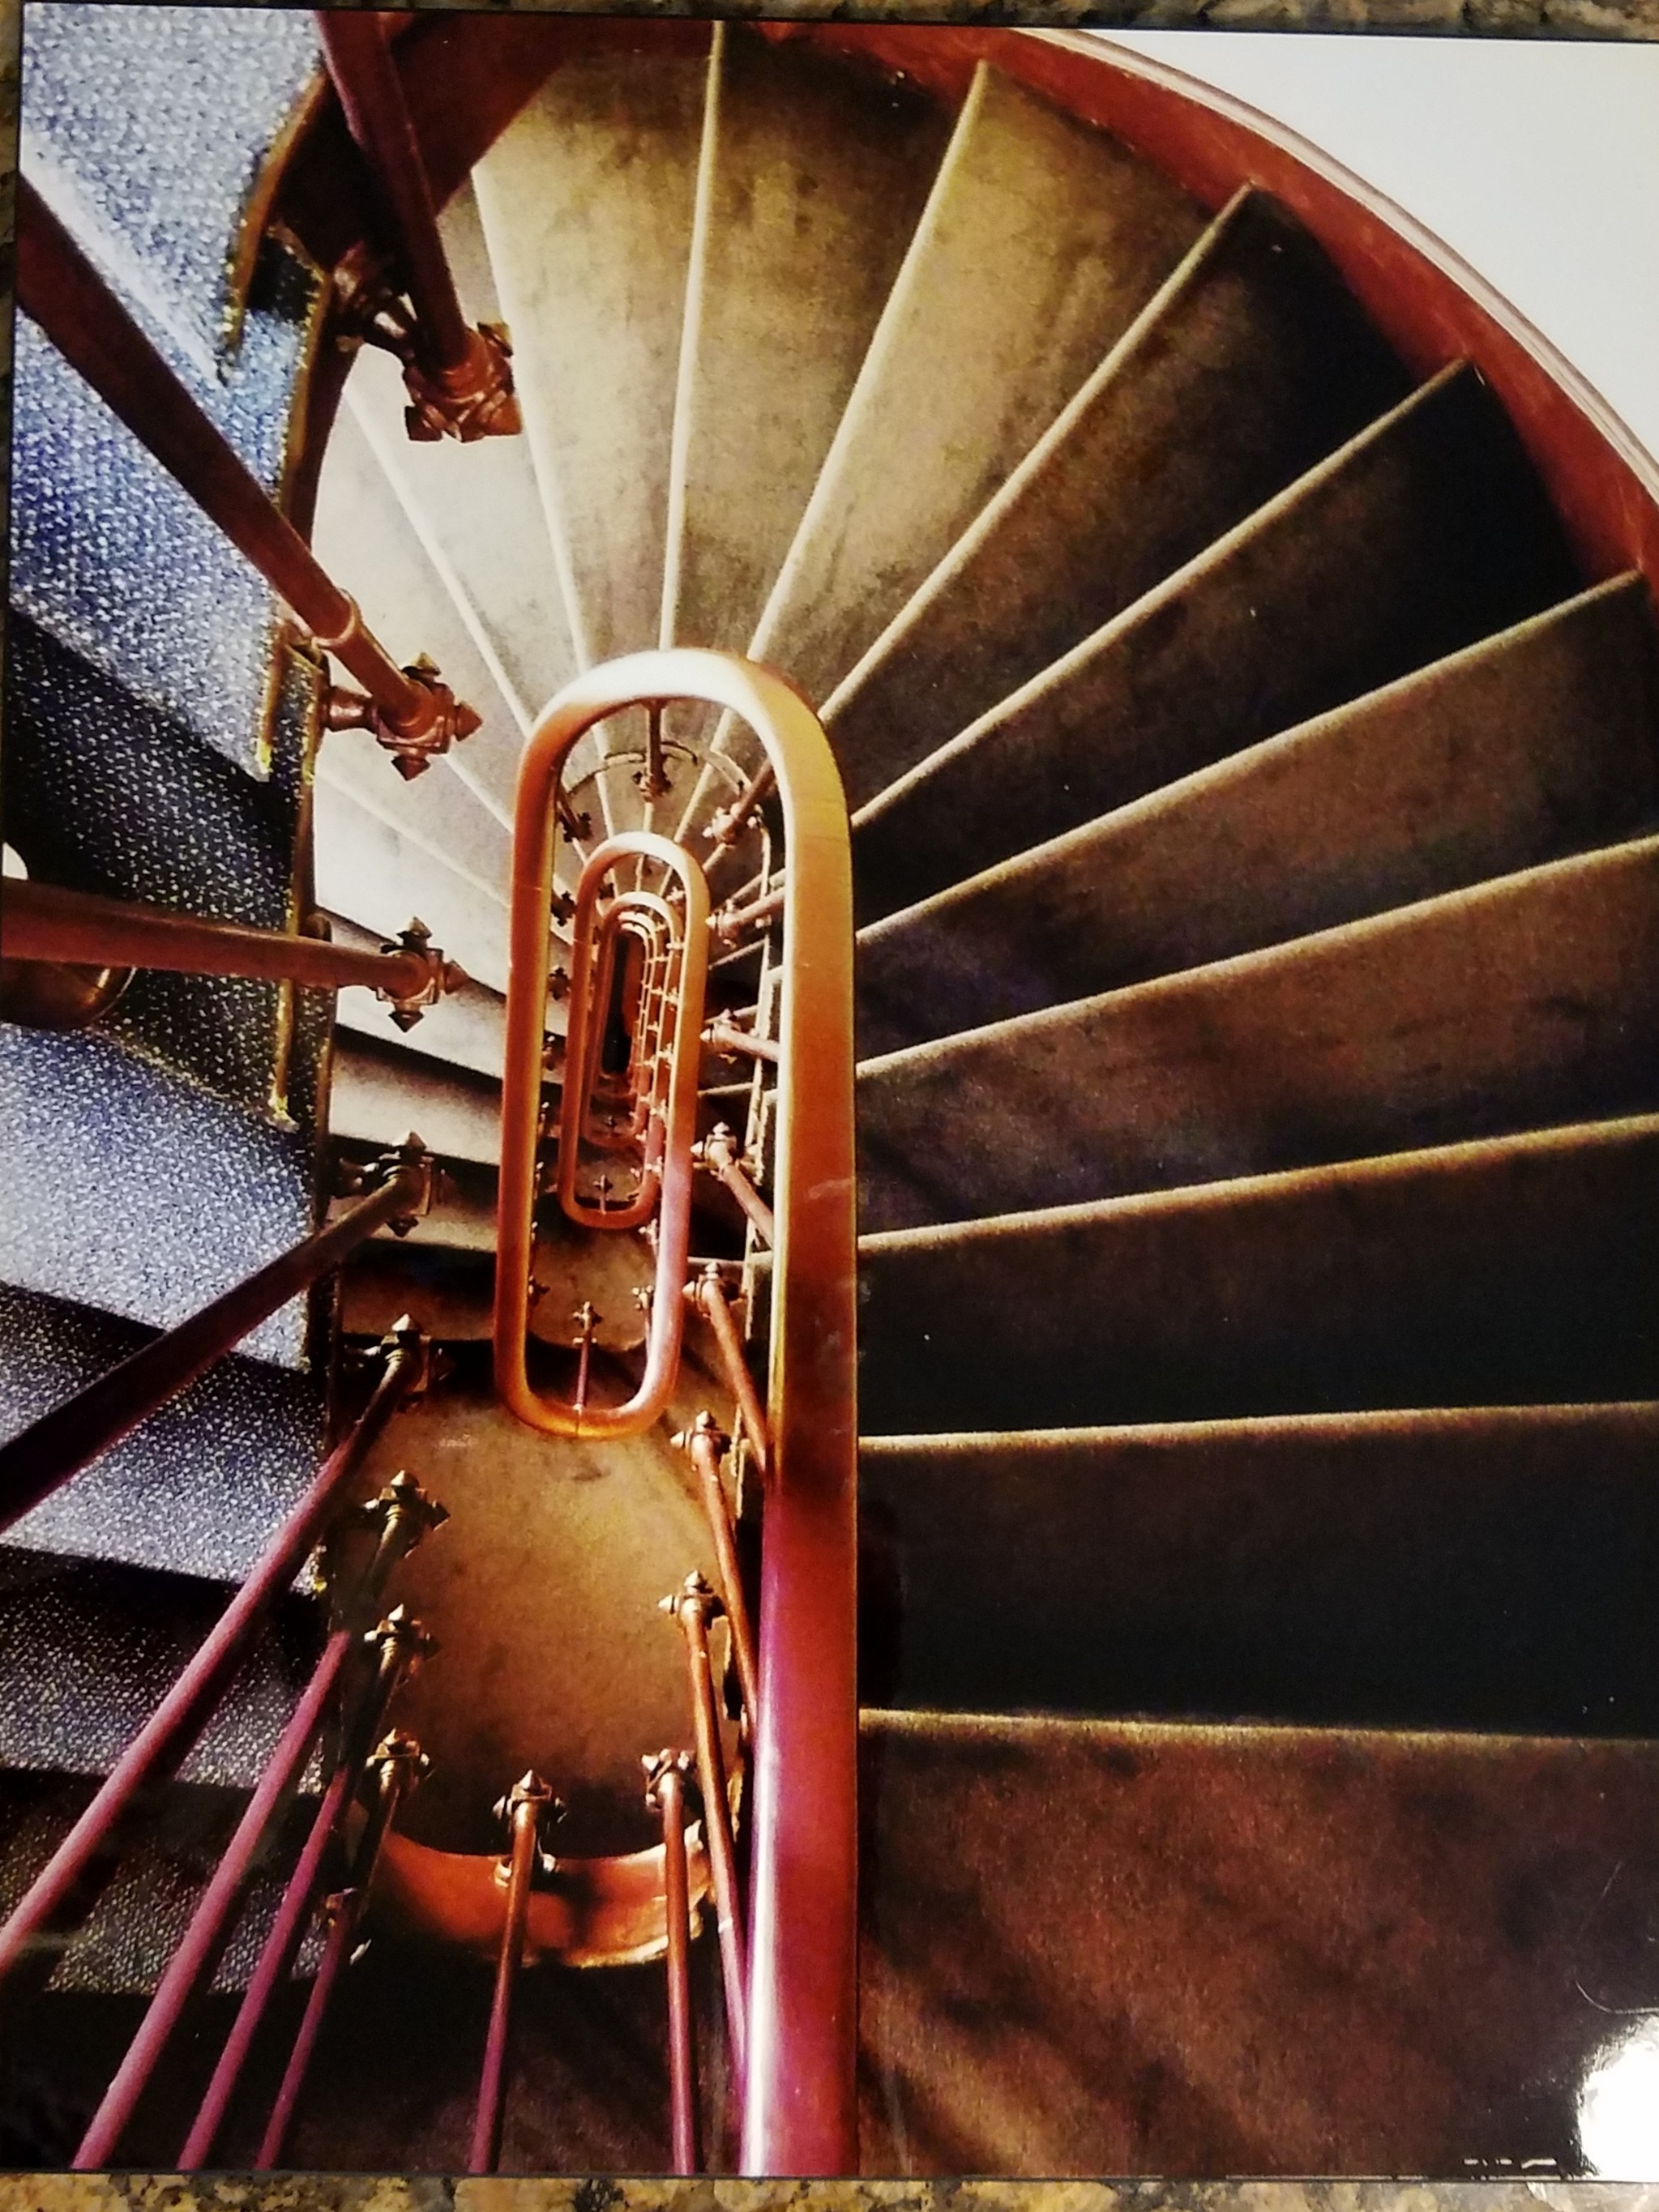 Paris Stairs